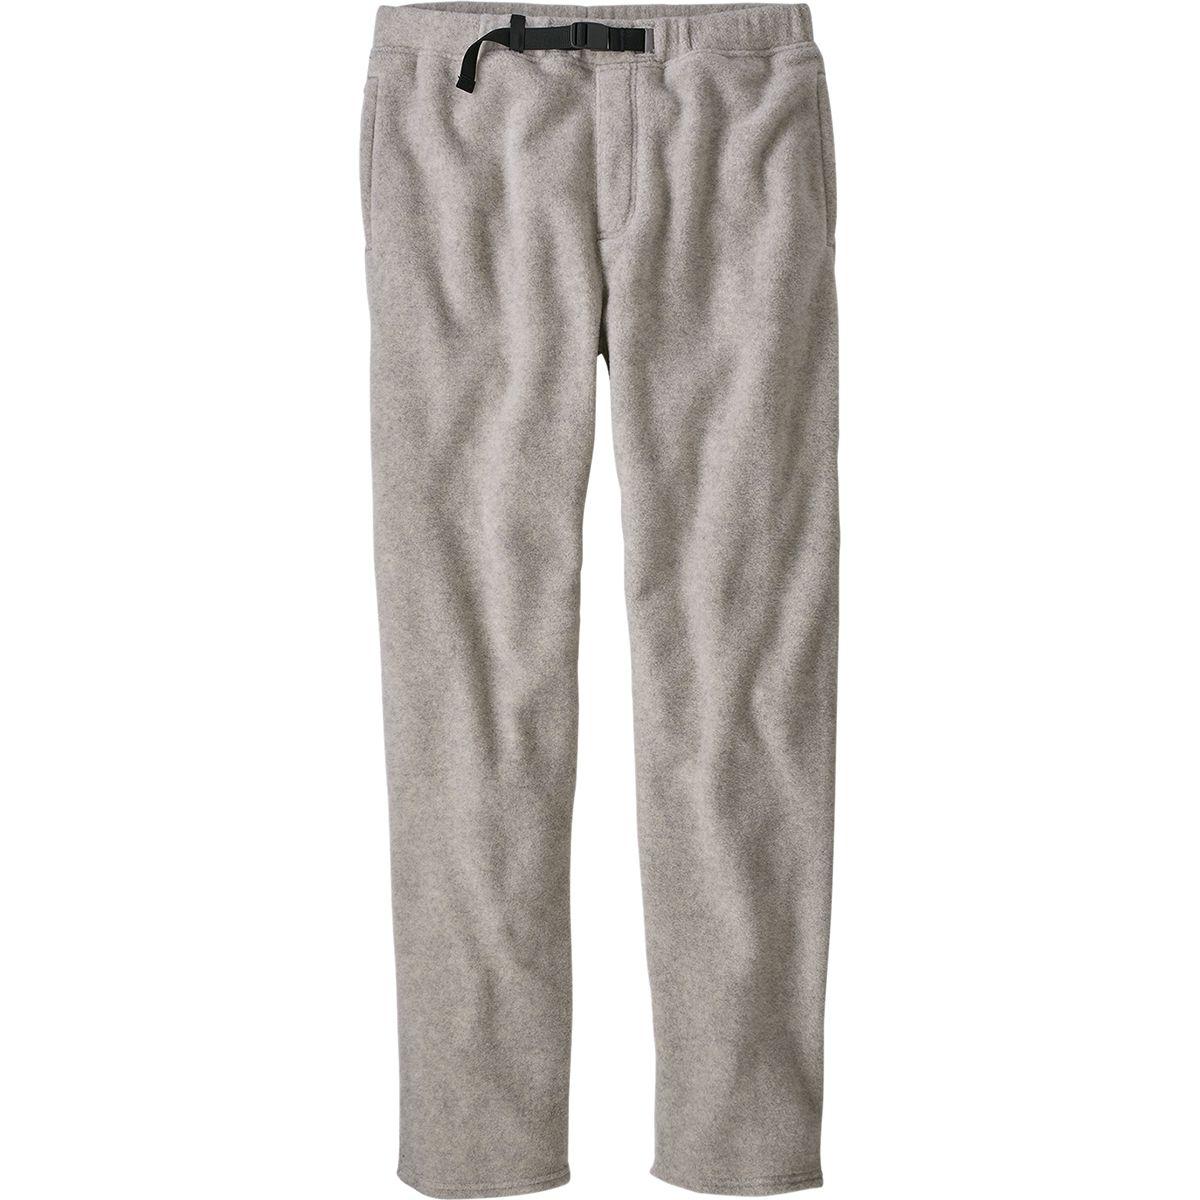 Patagonia Men's Mahnya Fleece Pants $ 99